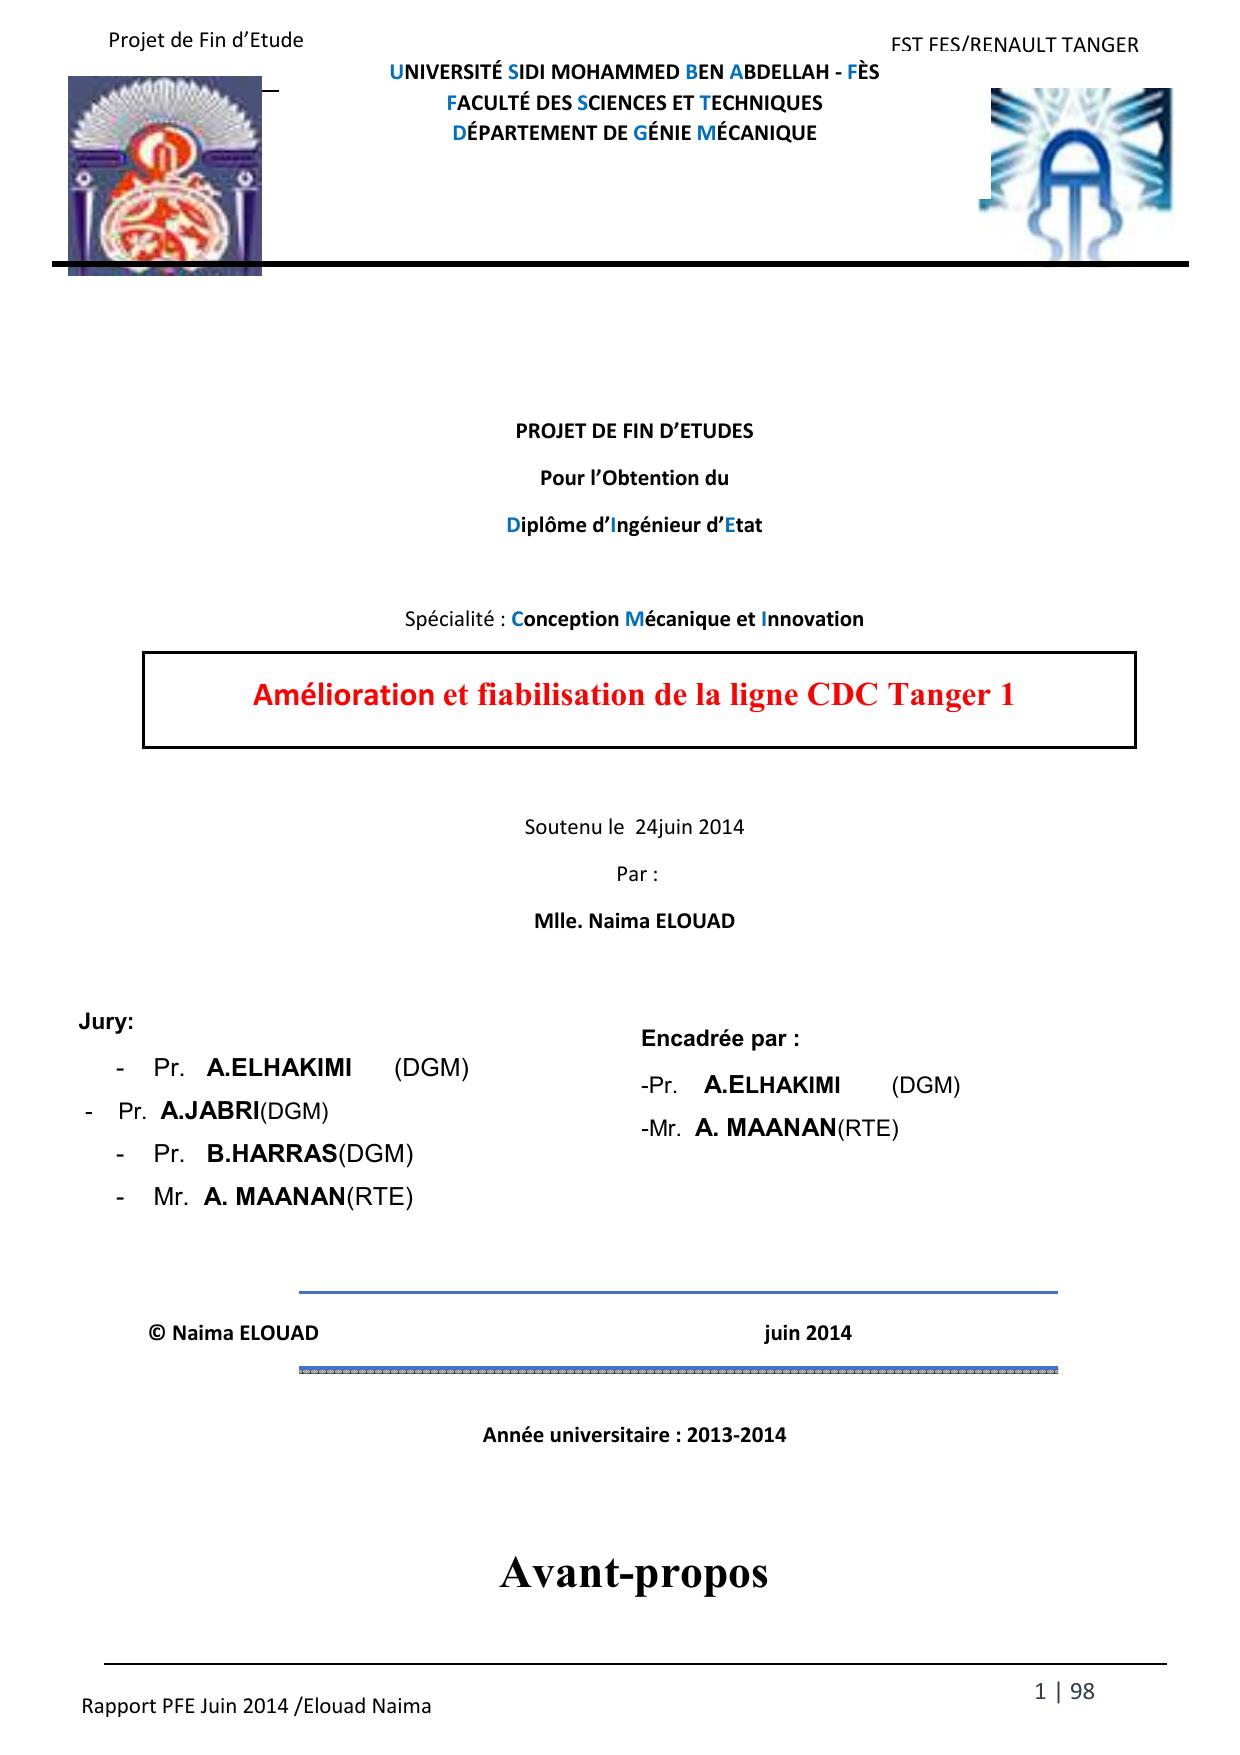 Amélioration et fiabilisation de la ligne CDC Tanger 1